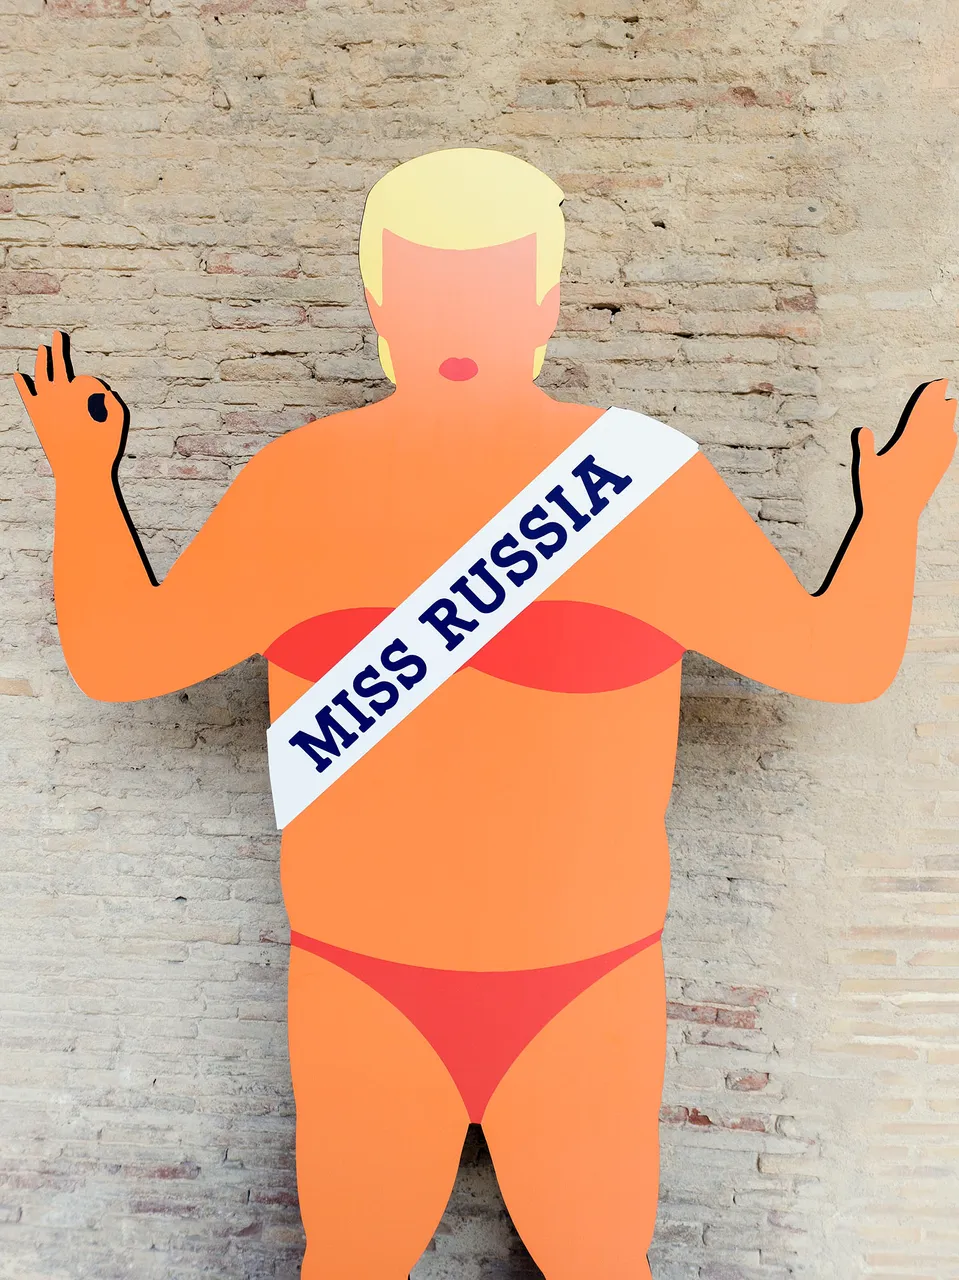 Trump Miss Russia.jpg